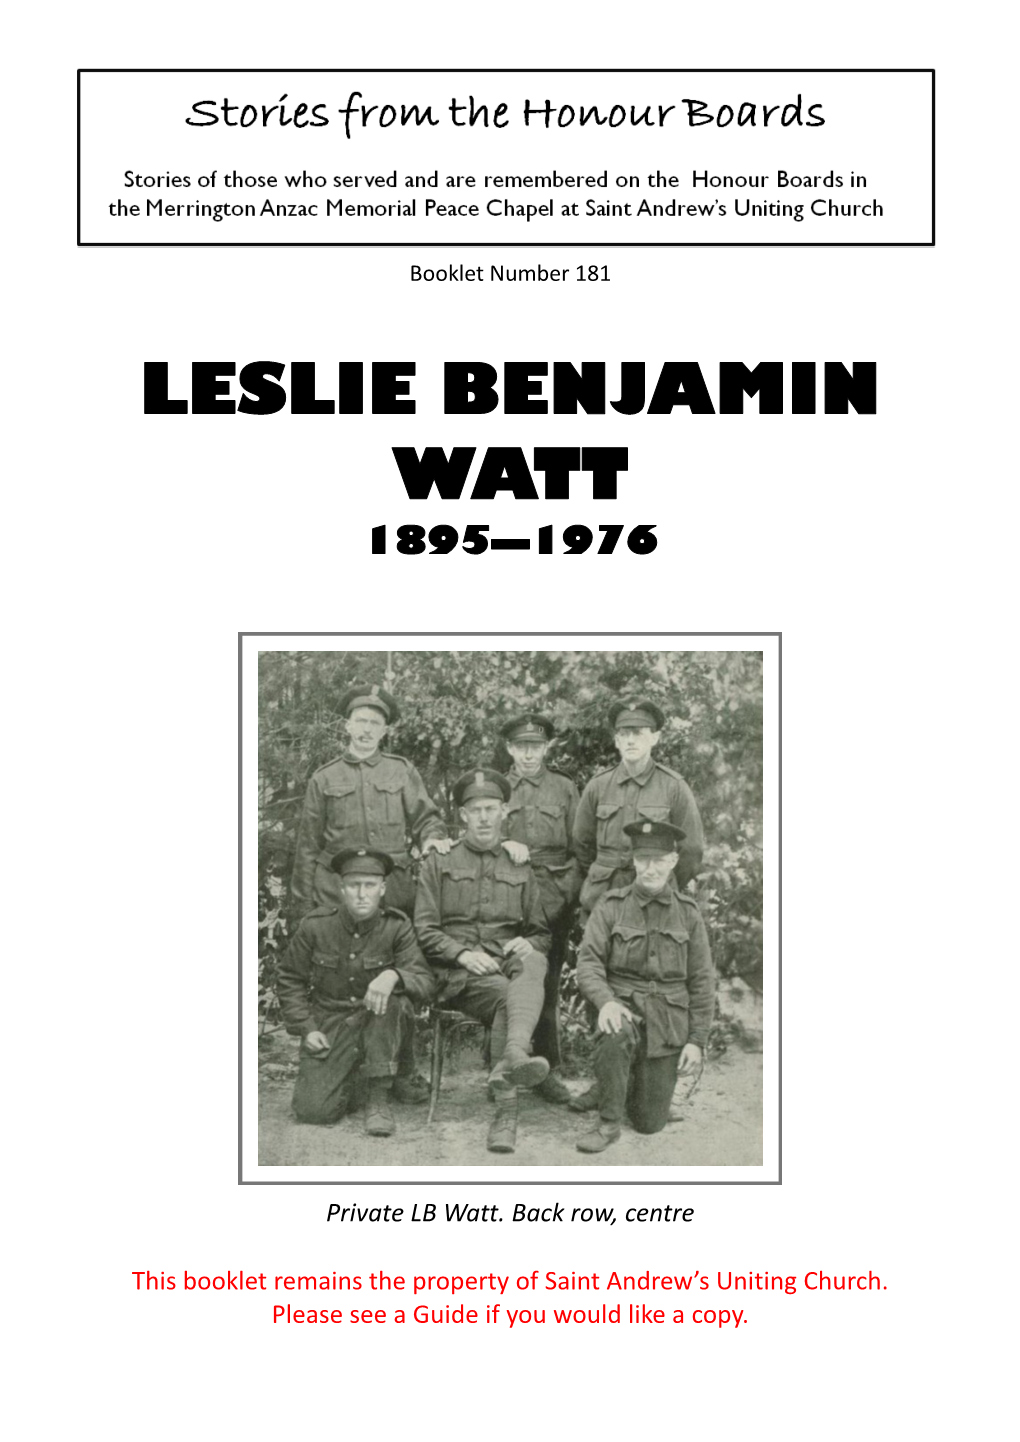 Leslie Benjamin Watt 1895—1976